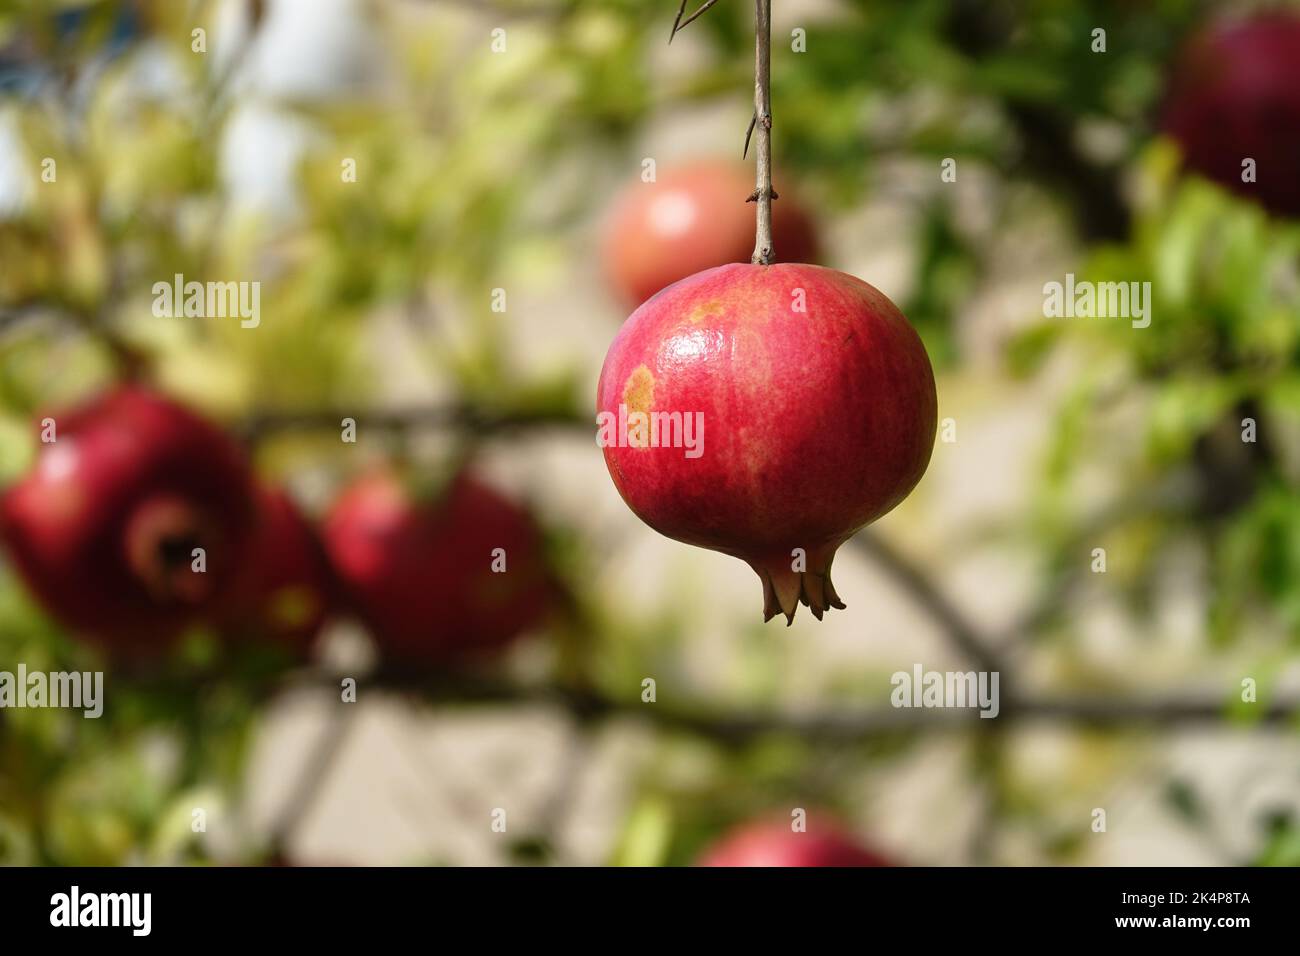 Fruit de grenade mûr rouge sur branche d'arbre dans le jardin. Image colorée avec emplacement pour le texte, gros plan. Rosh-haShana - symbole du nouvel an israélien Banque D'Images